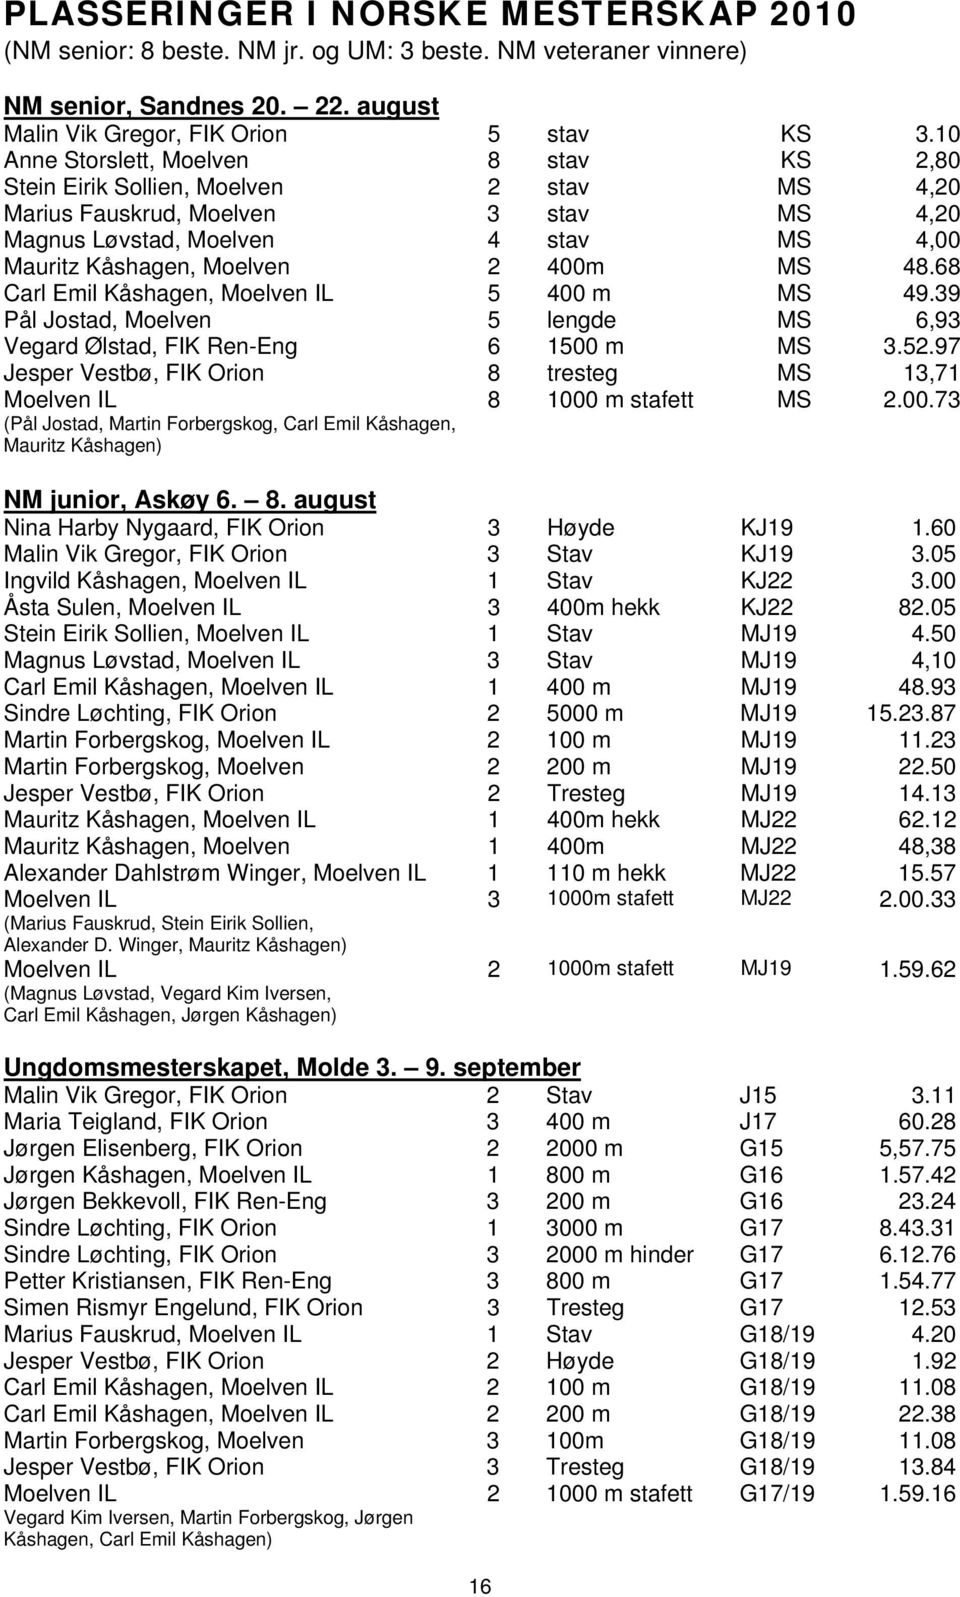 MS 48.68 Carl Emil Kåshagen, Moelven IL 5 400 m MS 49.39 Pål Jostad, Moelven 5 lengde MS 6,93 Vegard Ølstad, FIK Ren-Eng 6 1500 m MS 3.52.